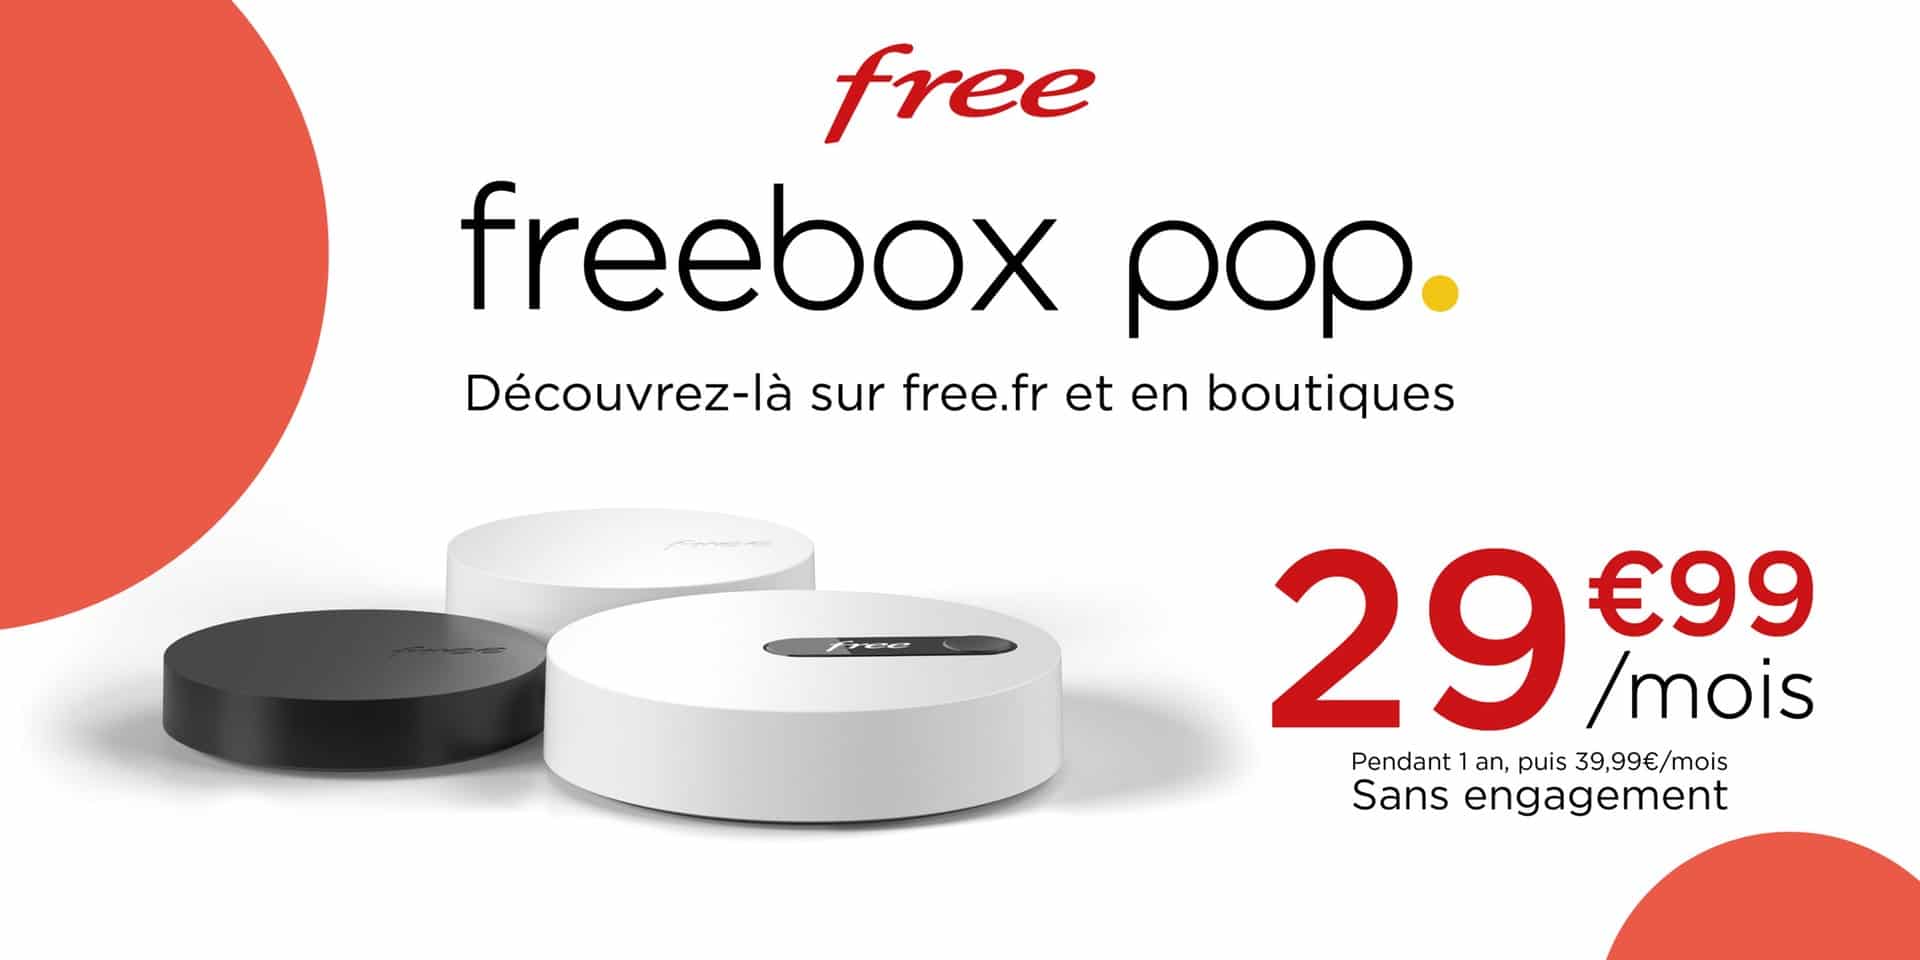 Free dévoile sa nouvelle freebox pop (v8) à 39,99 euros par mois